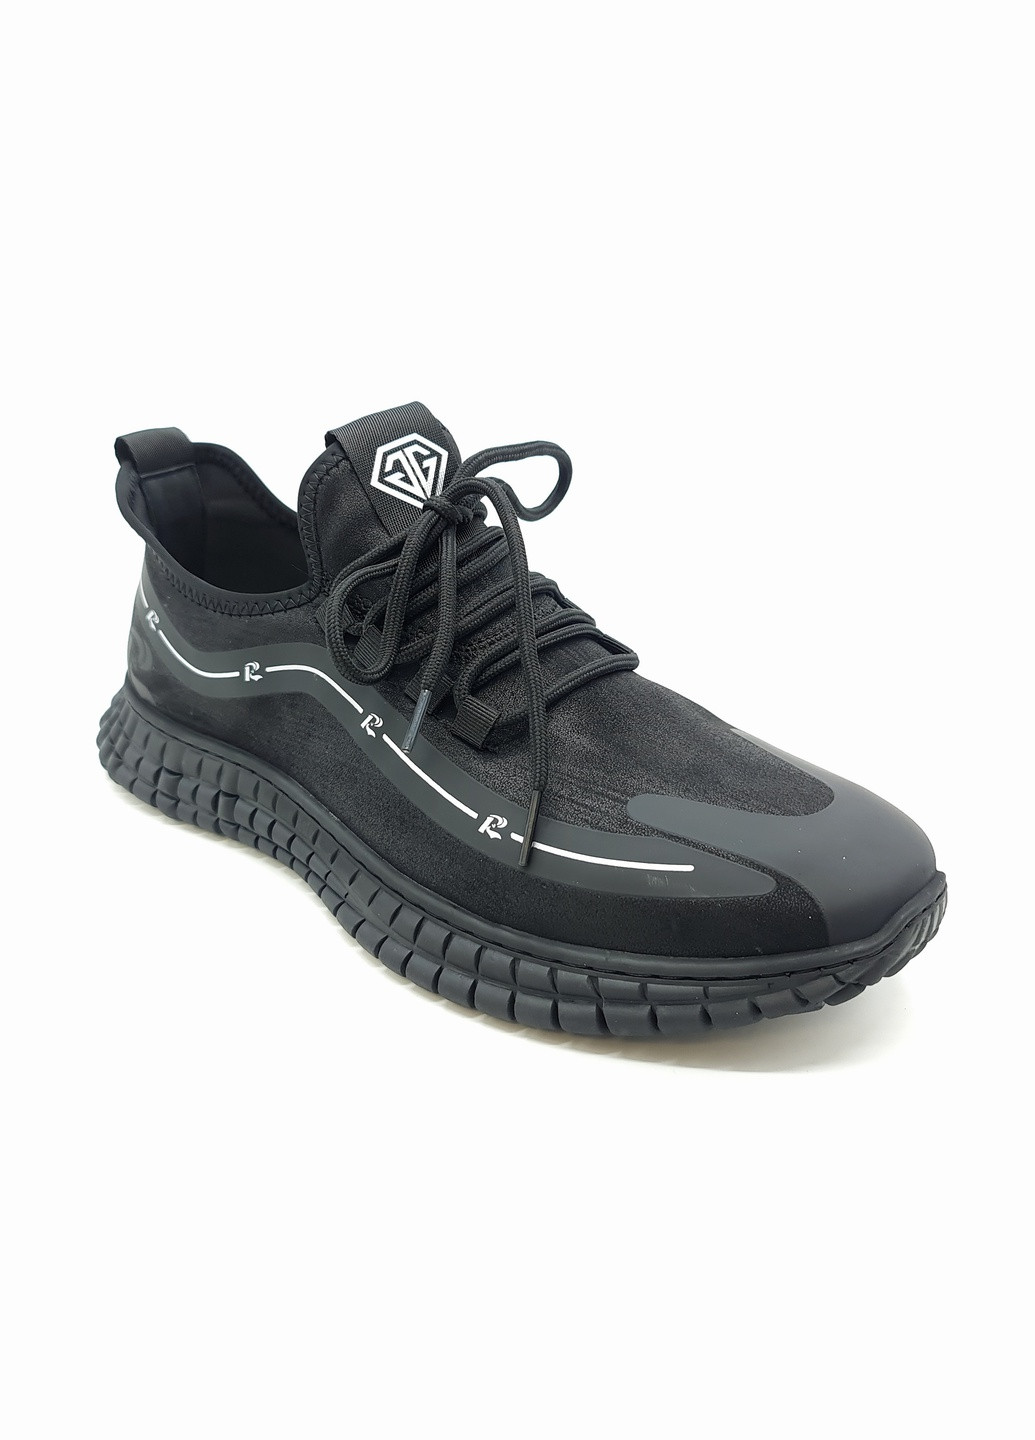 Черные всесезонные мужские кроссовки черные текстиль ya-17-1 28 см(р) Yalasou